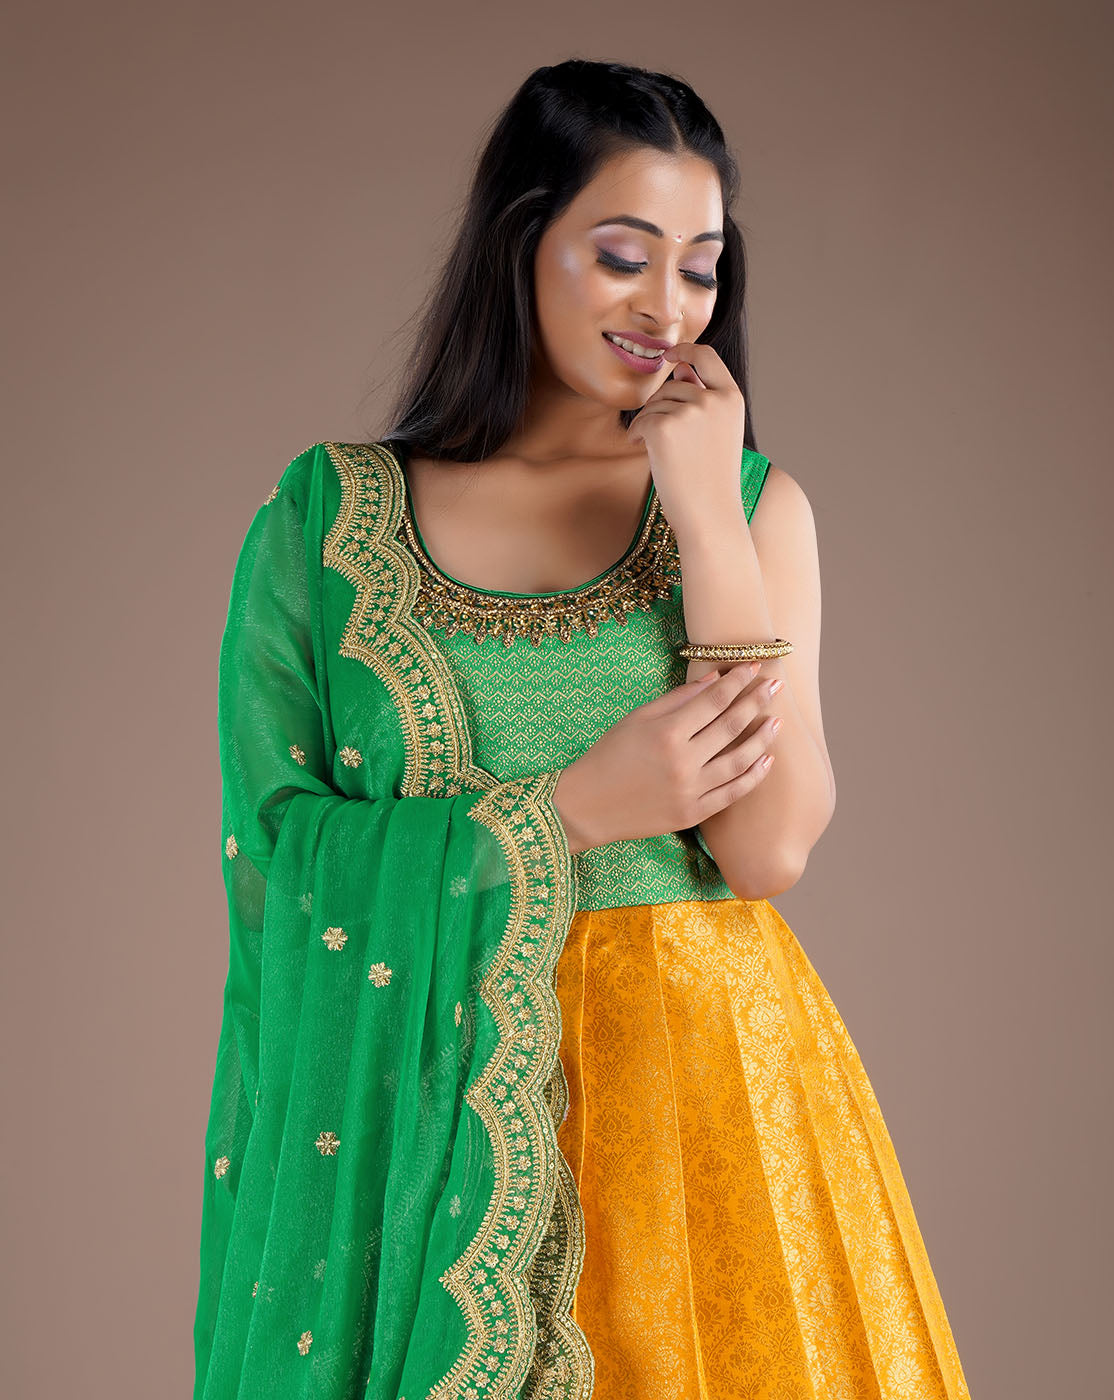 Banarasi Saree For Heart Fashionable Wear - Asistha.com